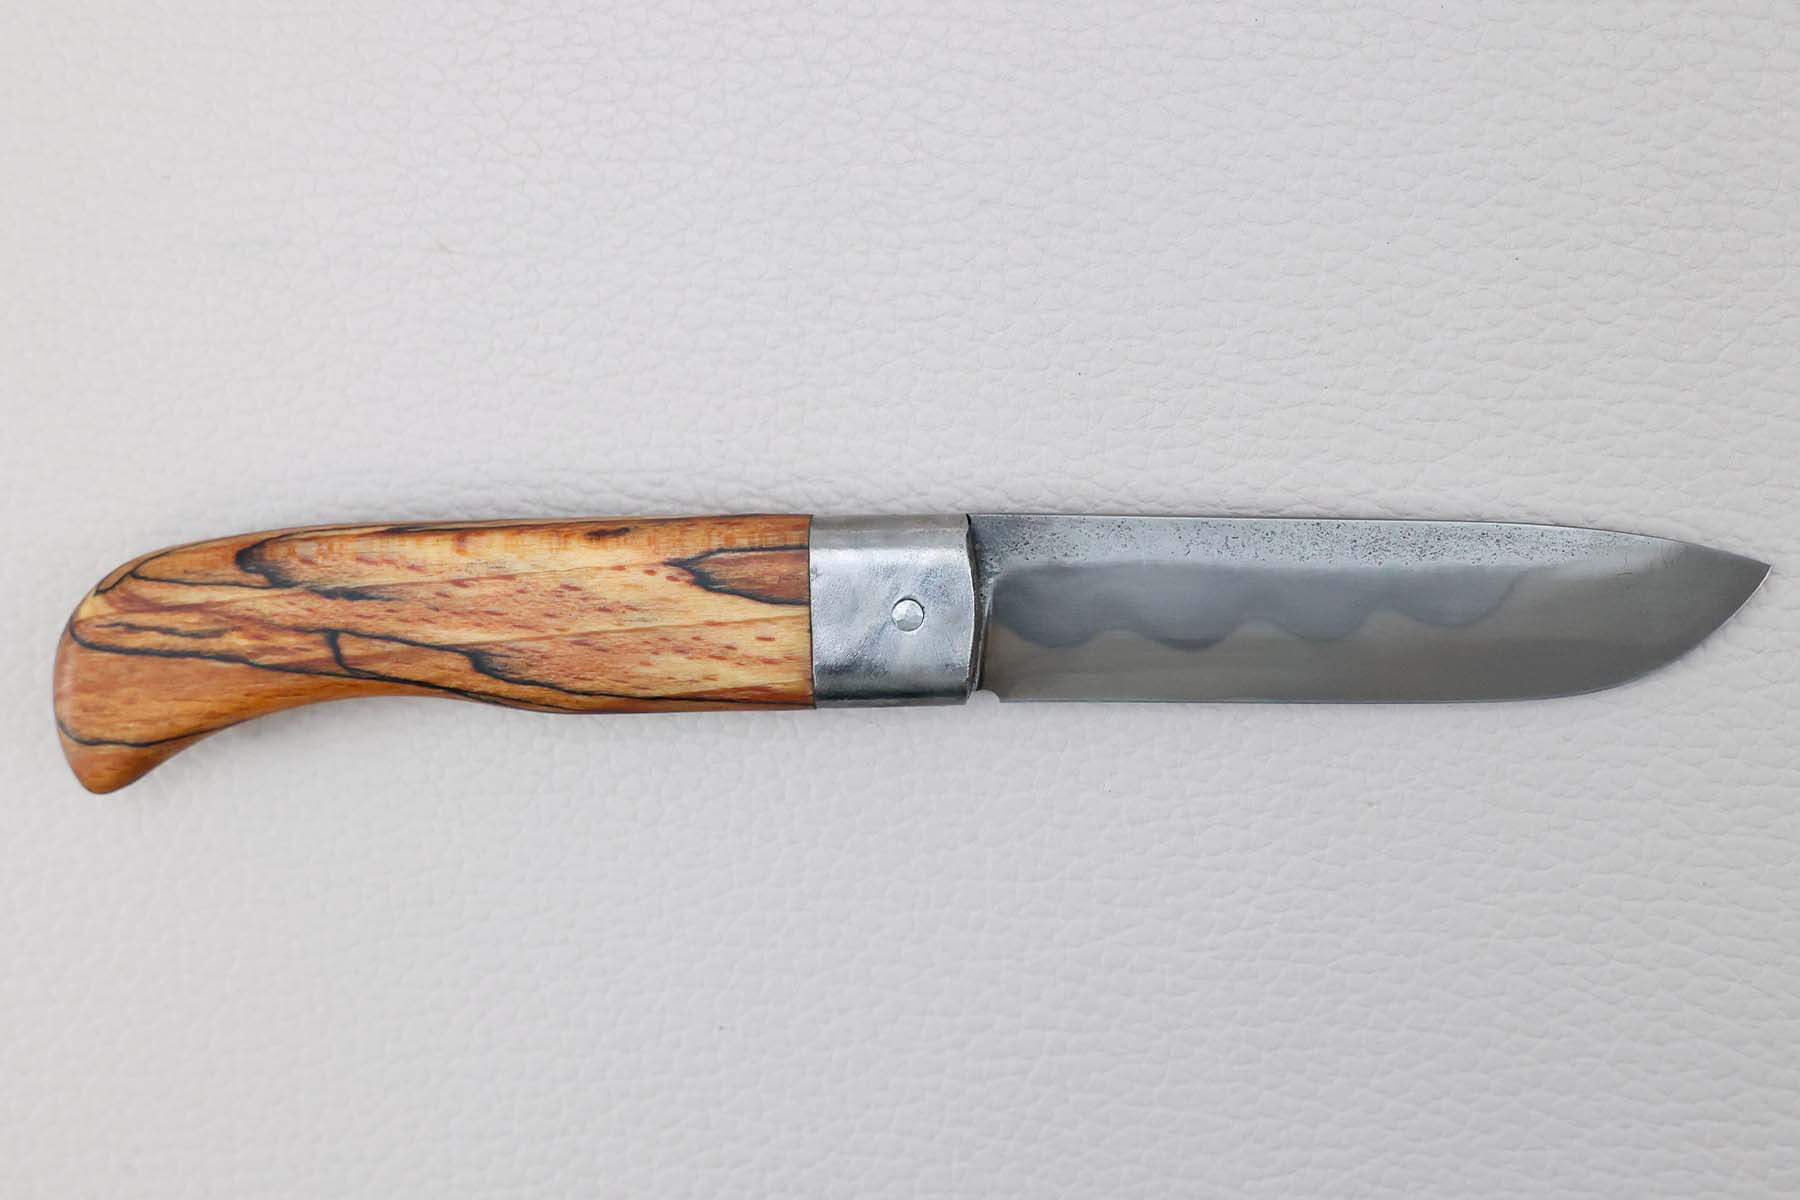 Couteau artisanal pliant Frédéric Maschio modèle Le Bugiste - White paper steel - hêtre échauffé